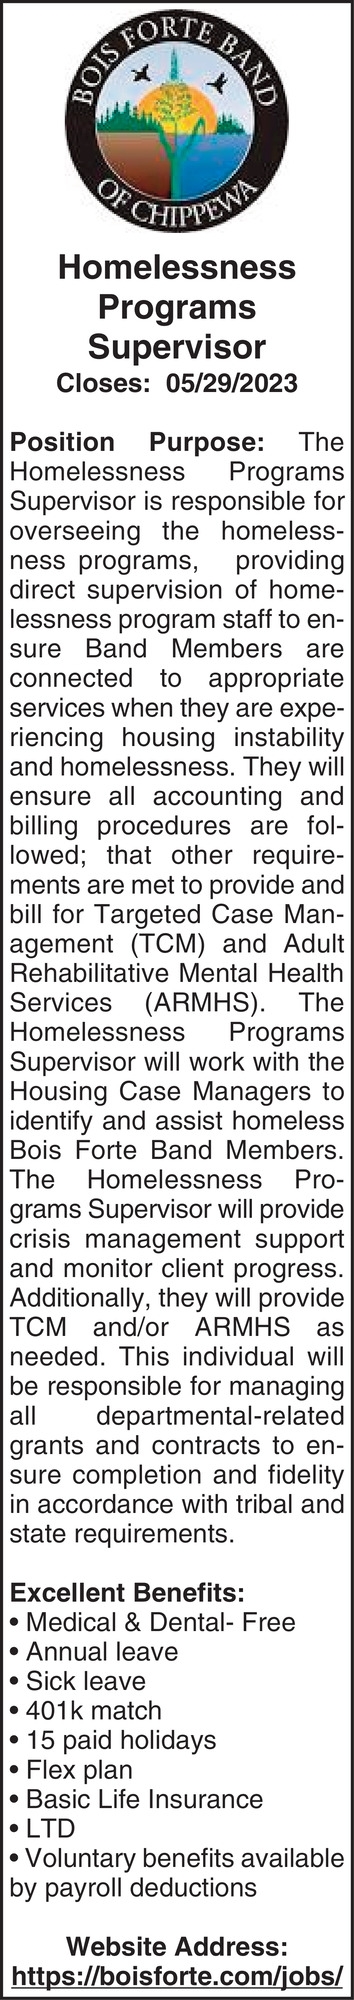 Homelessness Programs Supervisor